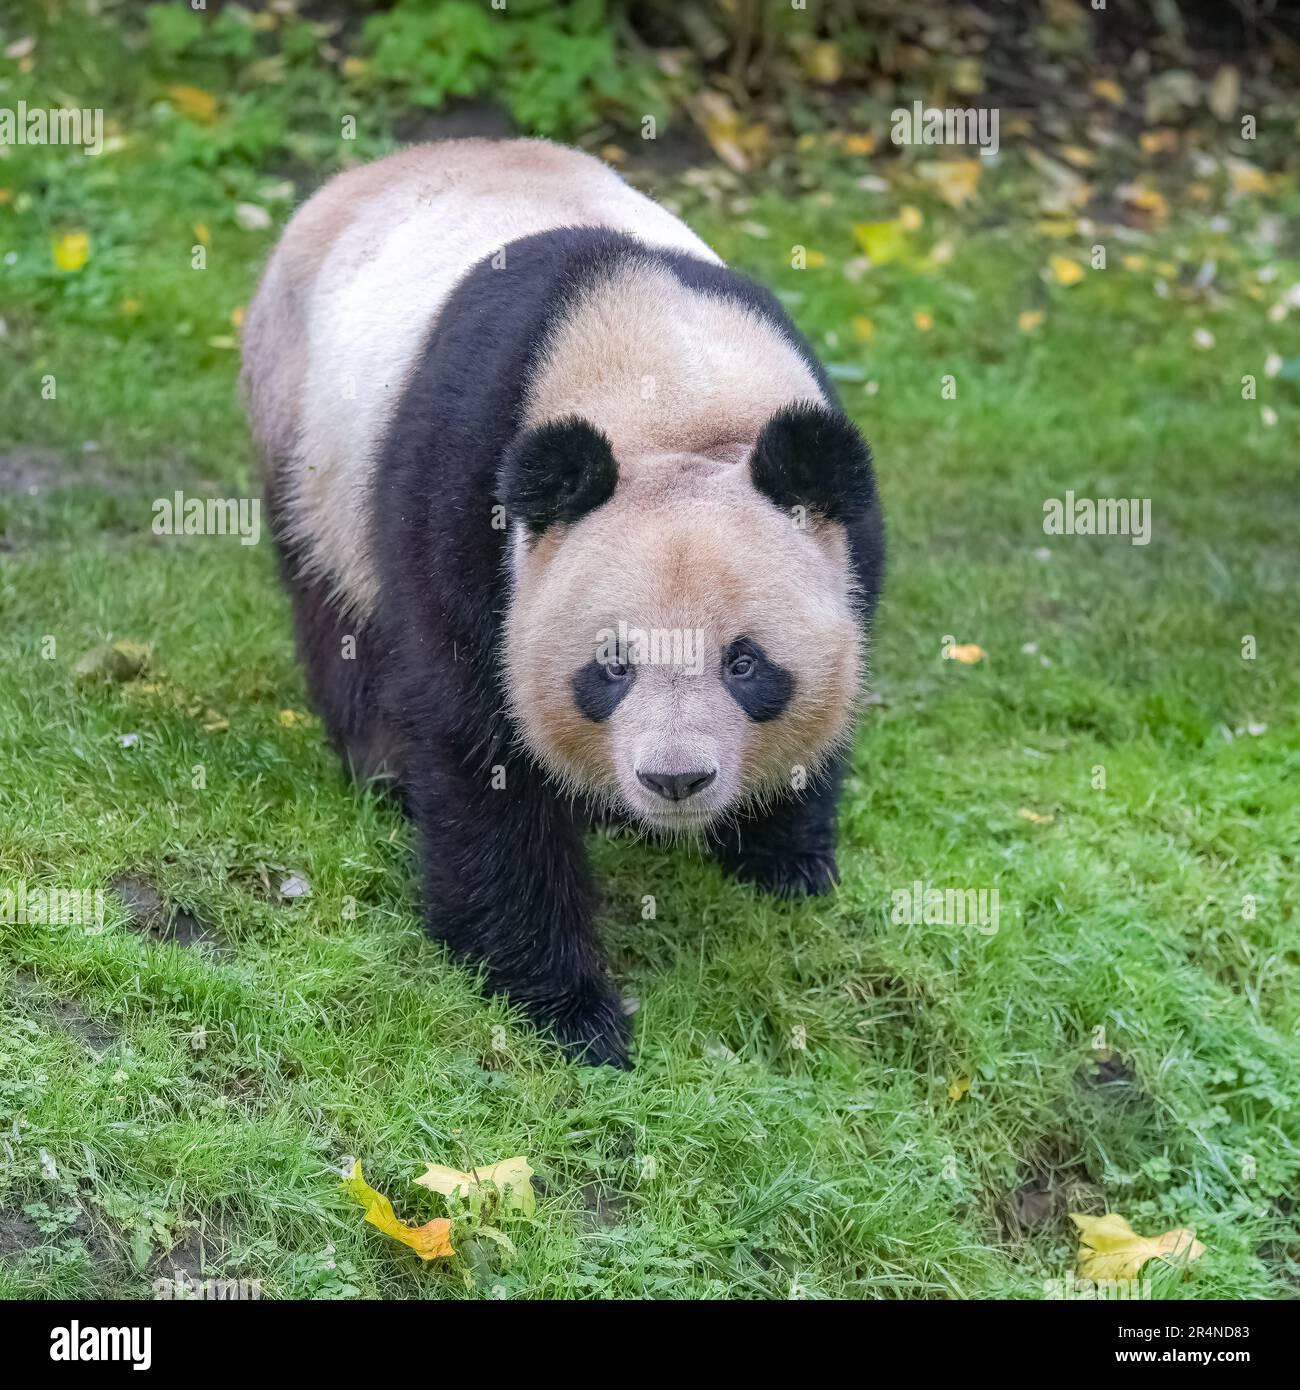 Un panda géant marchant sur l'herbe, portrait Banque D'Images